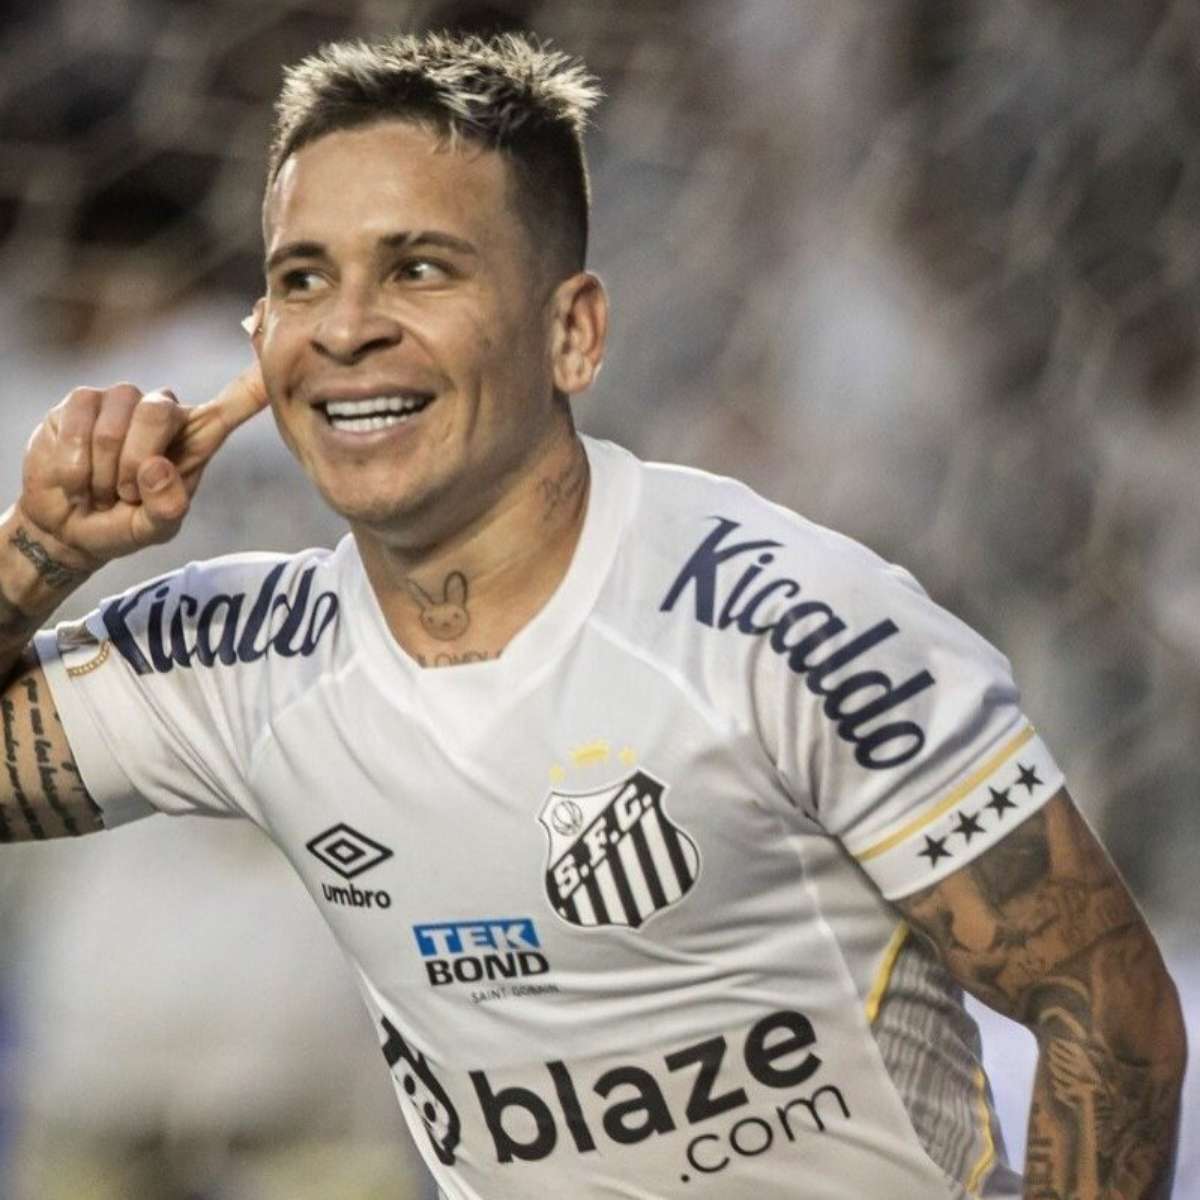 Soteldo vai trocar o Santos pelo Corinthians? O que sabemos sobre o futuro  do atacante, futebol